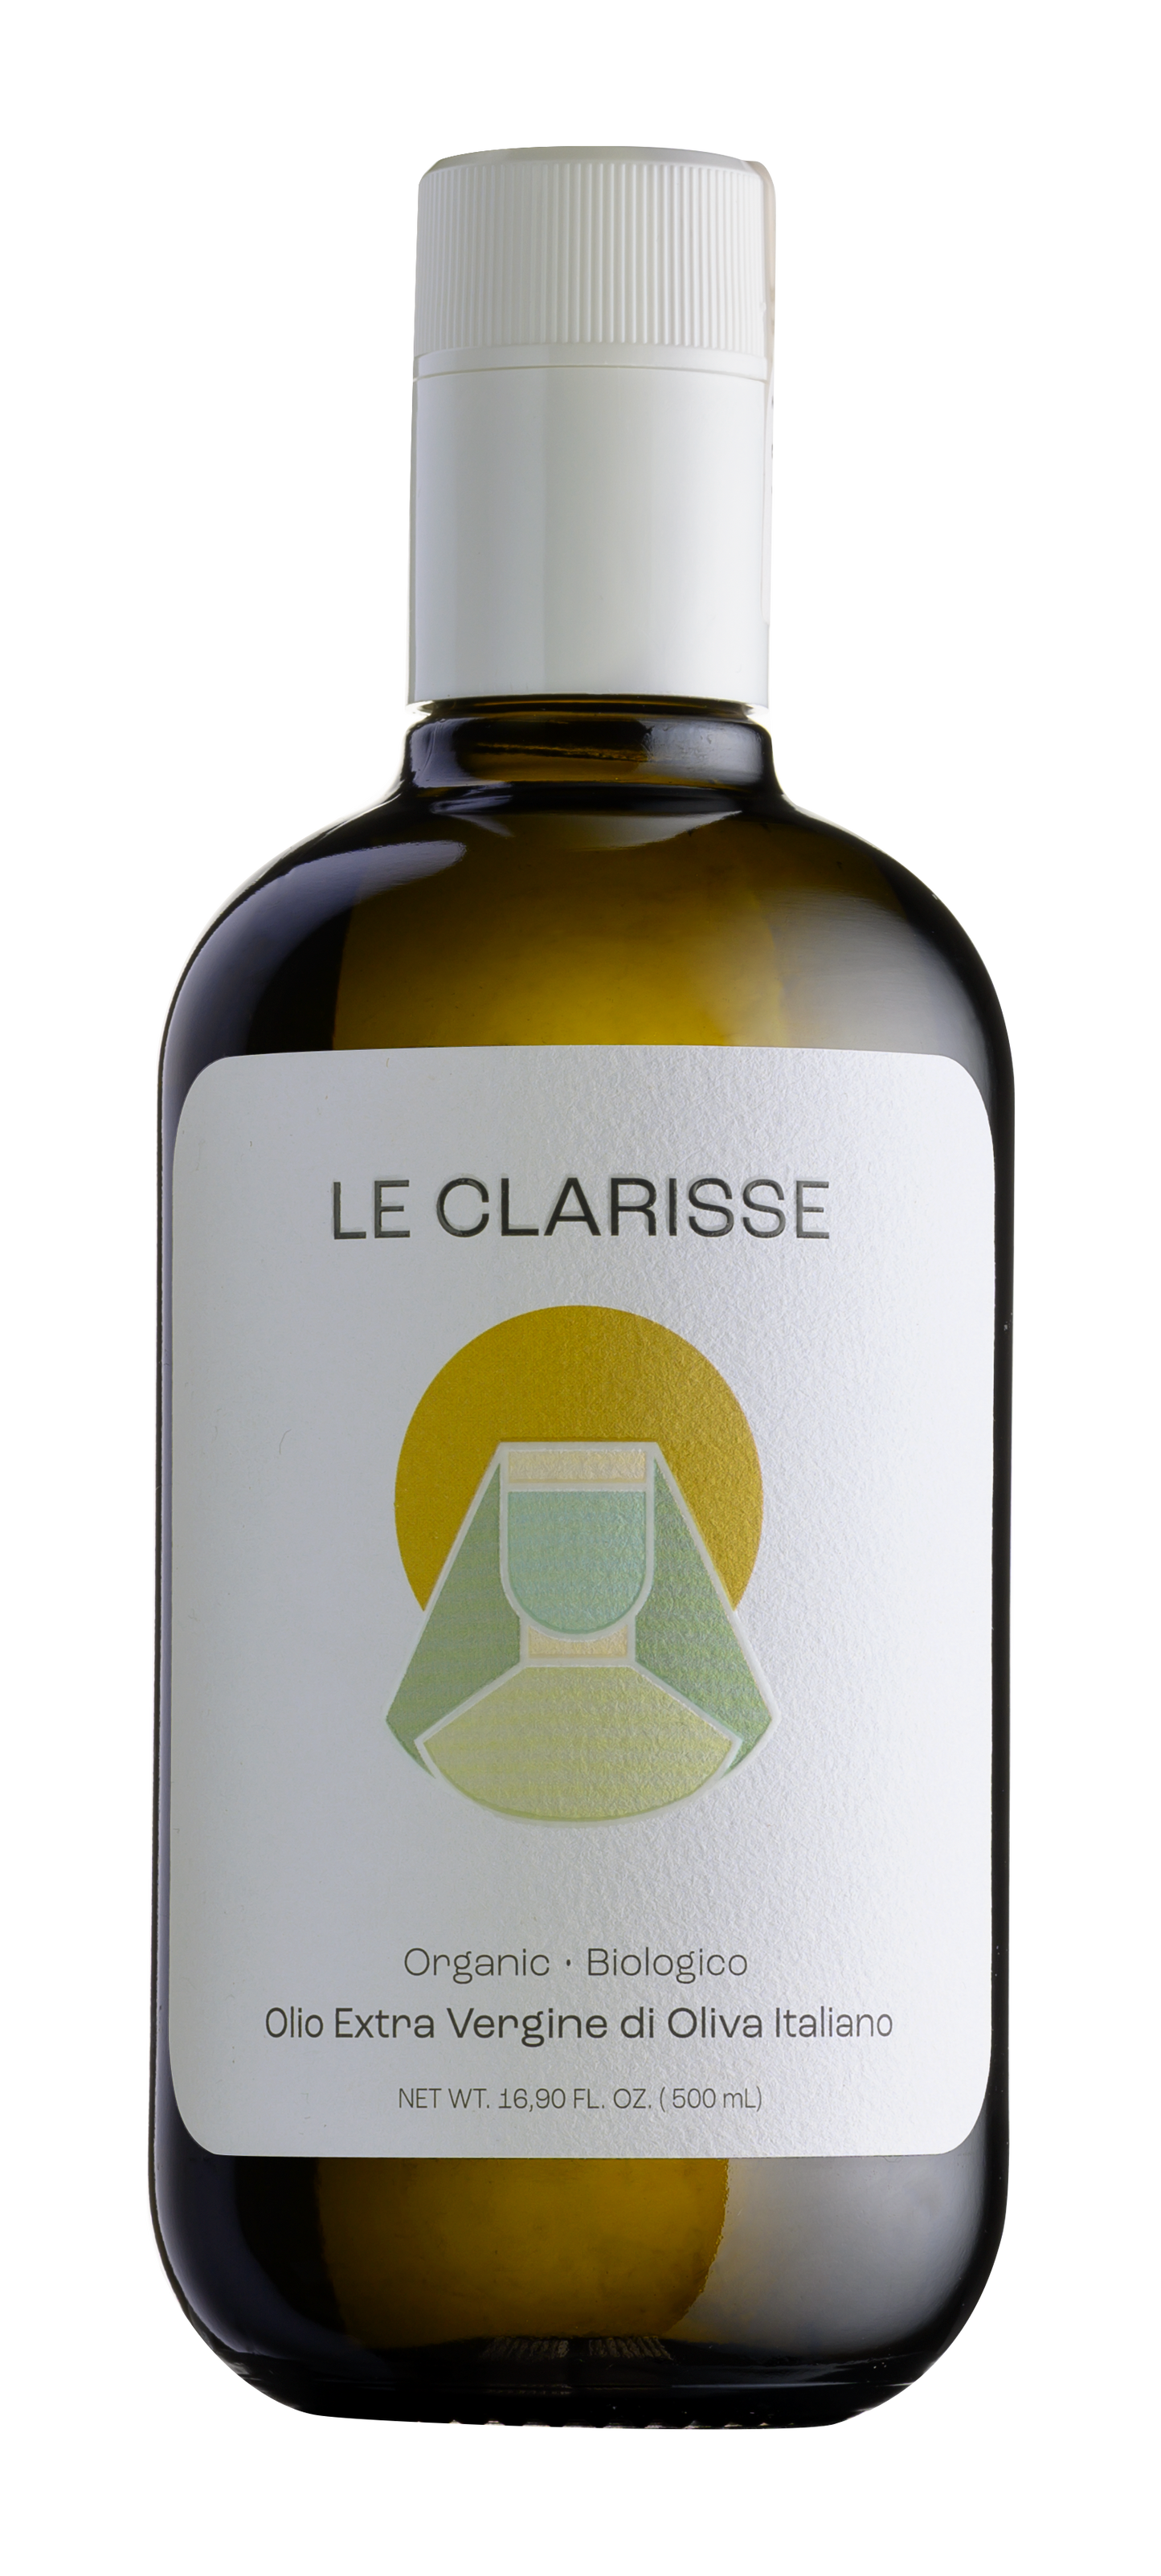 Le Clarisse - Premium Olio Extra Vergine di Oliva BIO